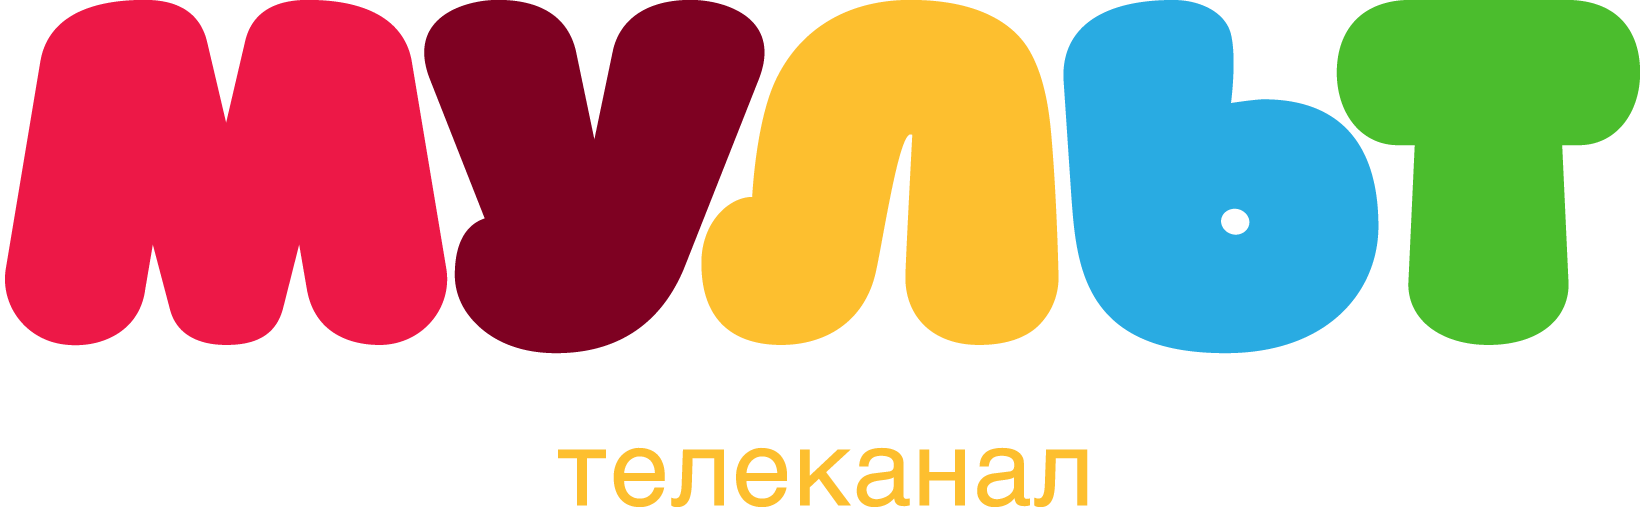 Логотипы детских каналов.